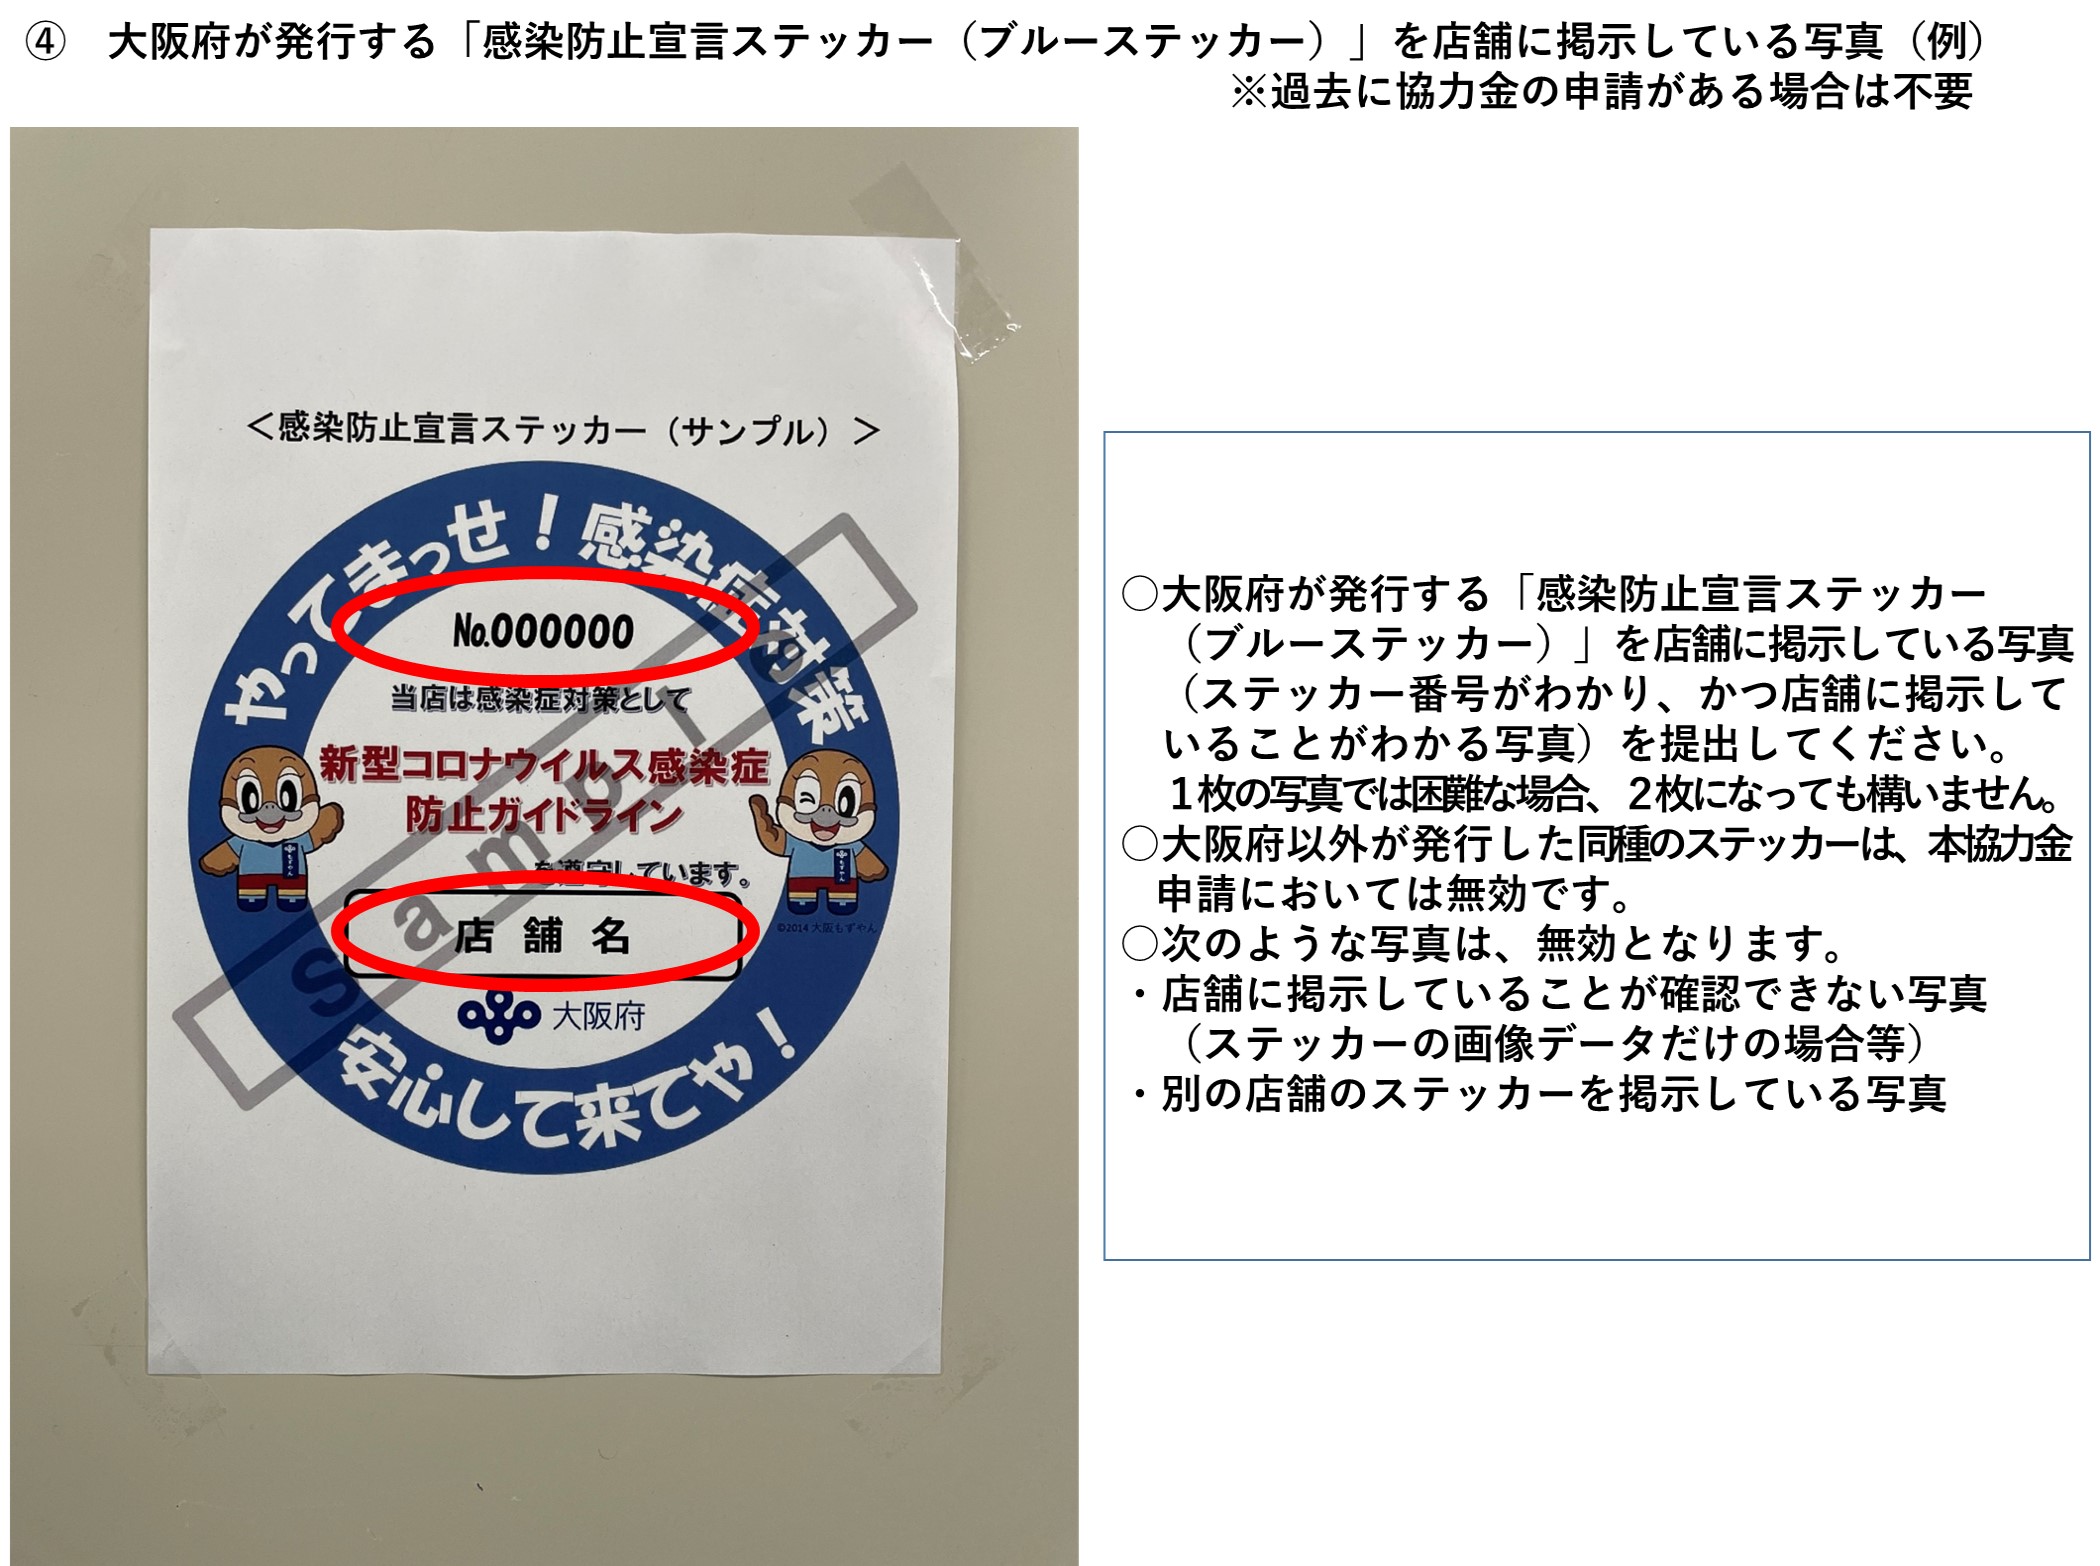 大阪府が発行する感染防止宣言ステッカー（ブルーステッカー）を店舗に掲示している写真を示しています